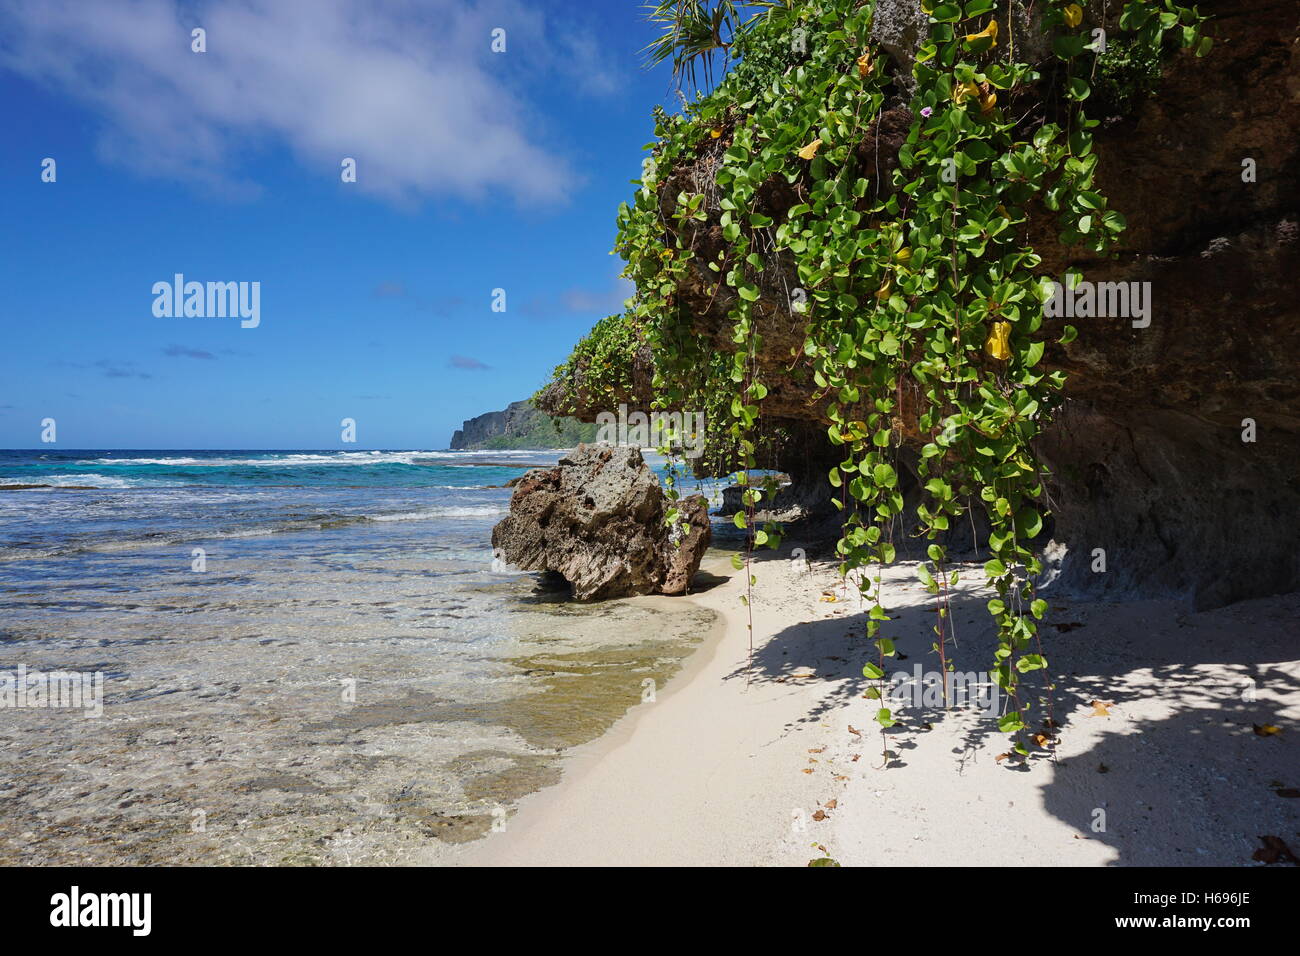 Küste mit kriechende Pflanze hängen vom Felsen, Rurutu Island, Süd Pazifik, Austral, Französisch-Polynesien Stockfoto